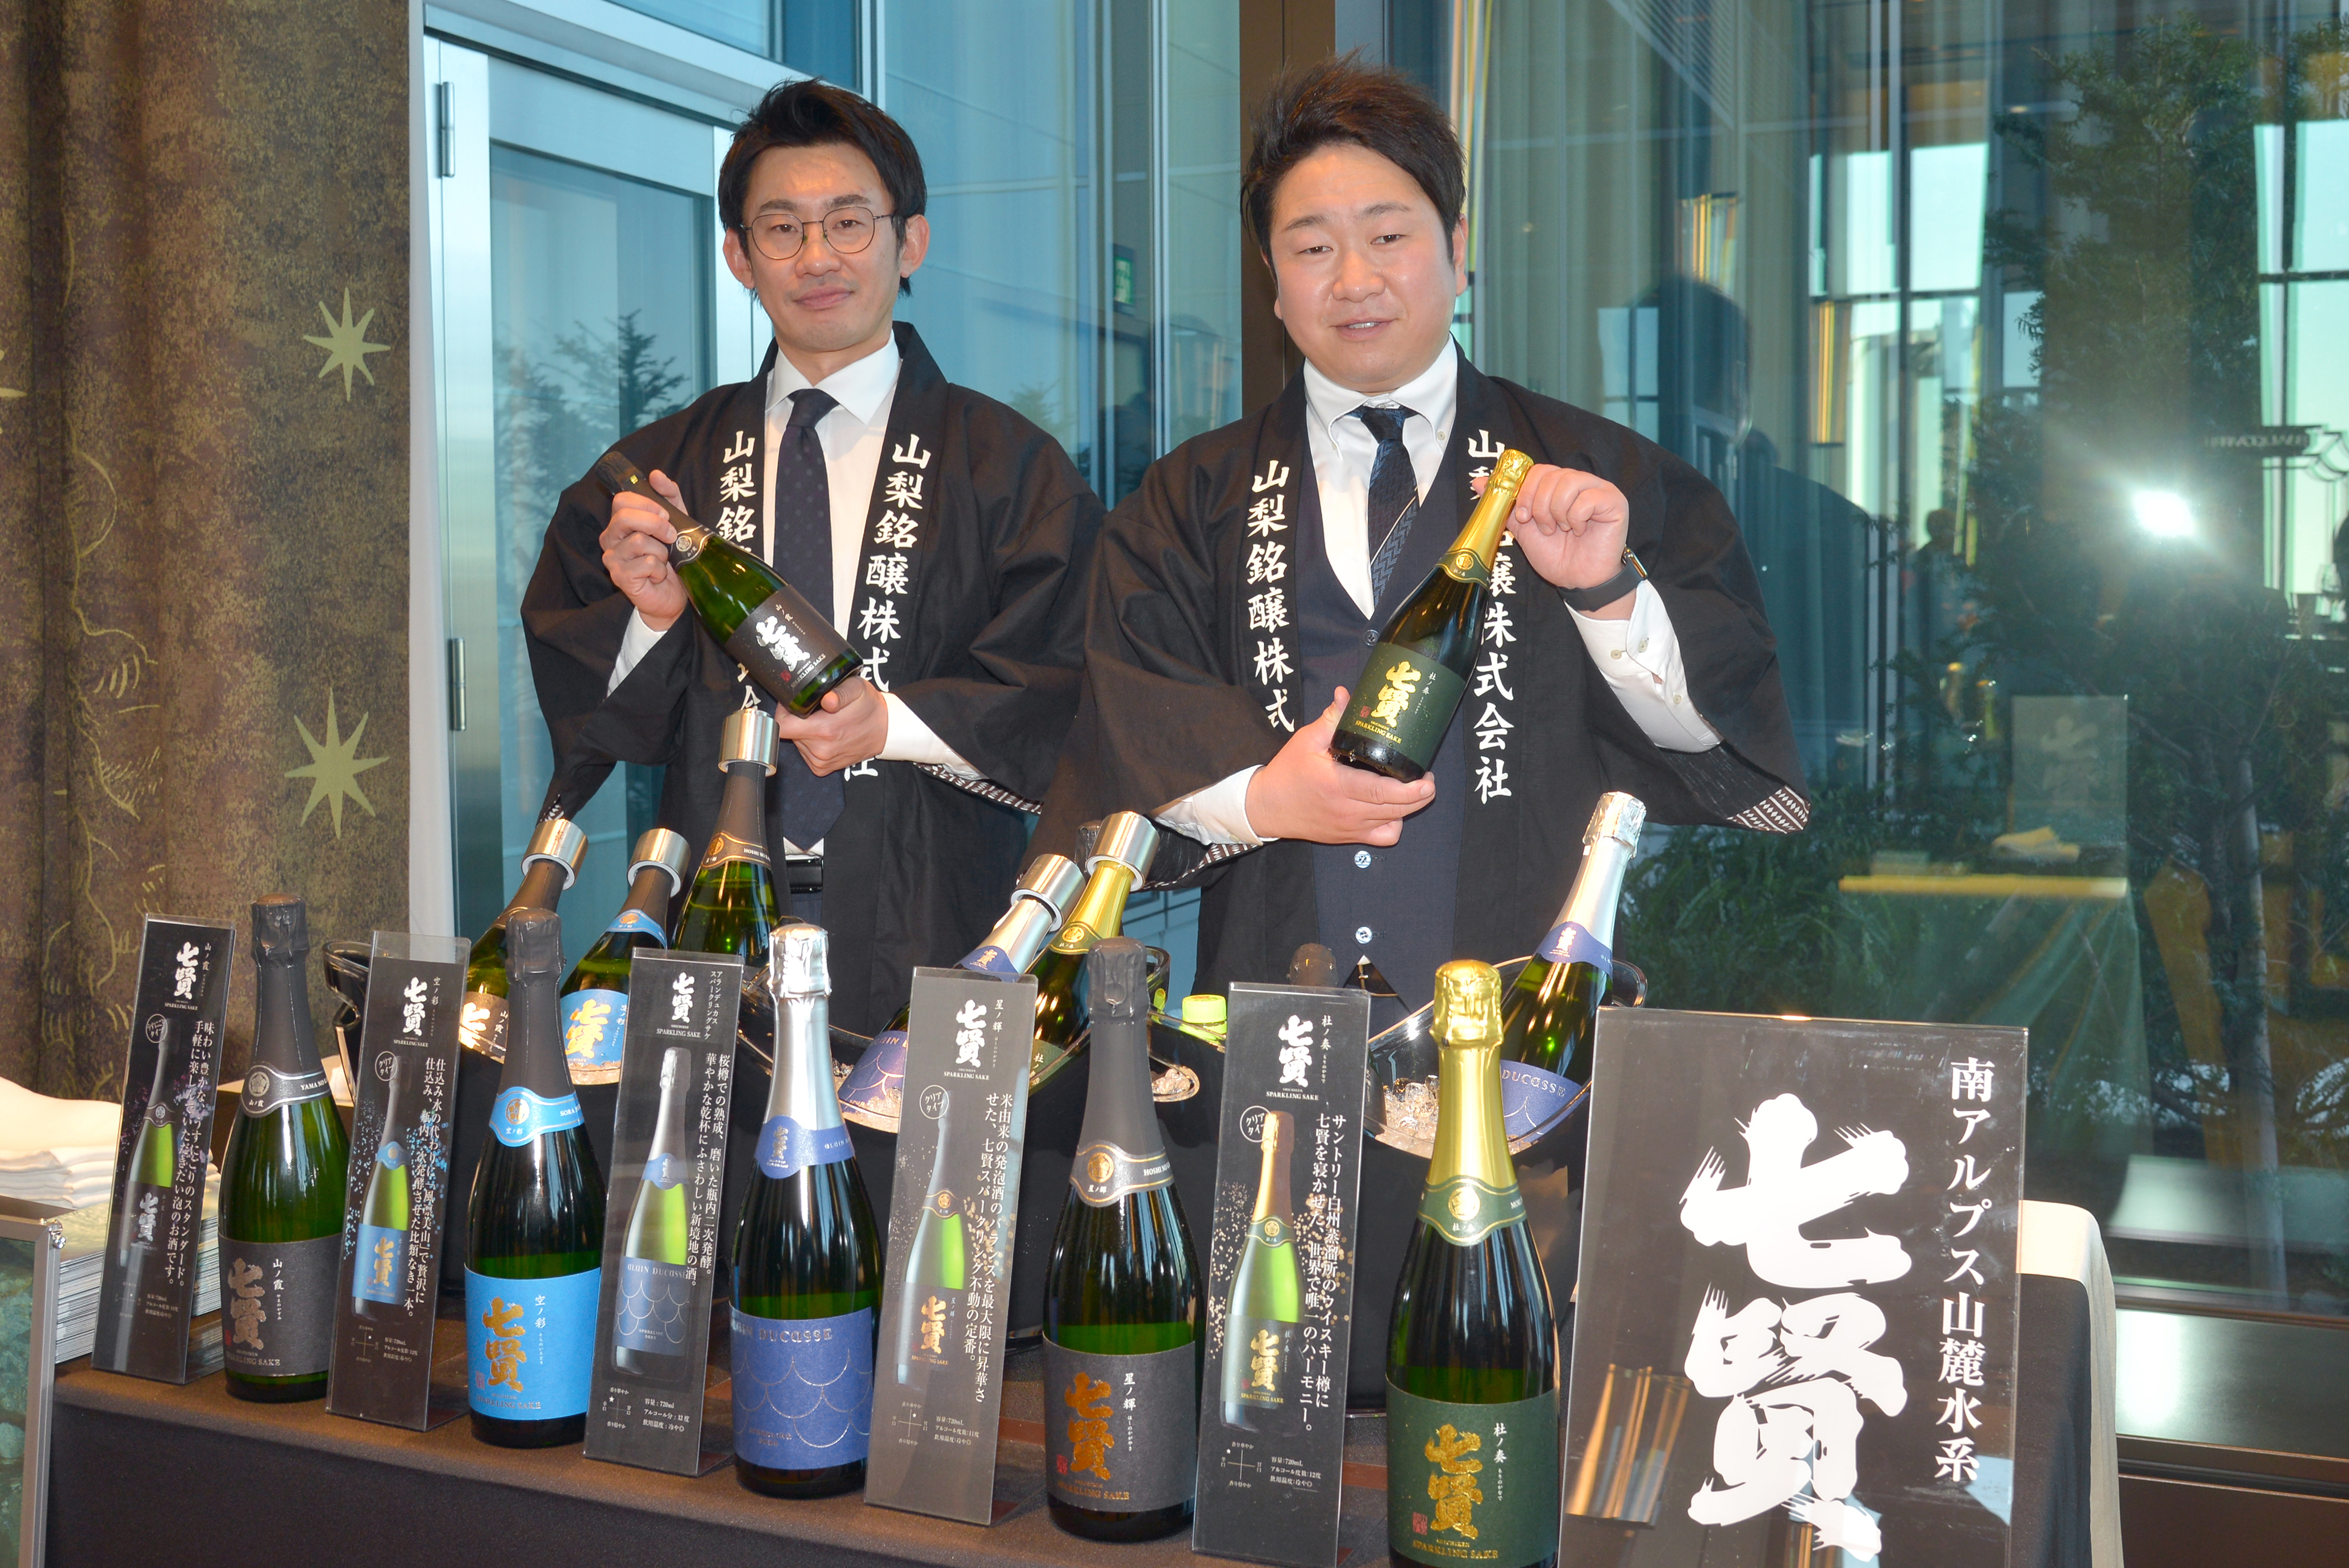 スパークリング日本酒等「七賢」を醸す山梨銘醸